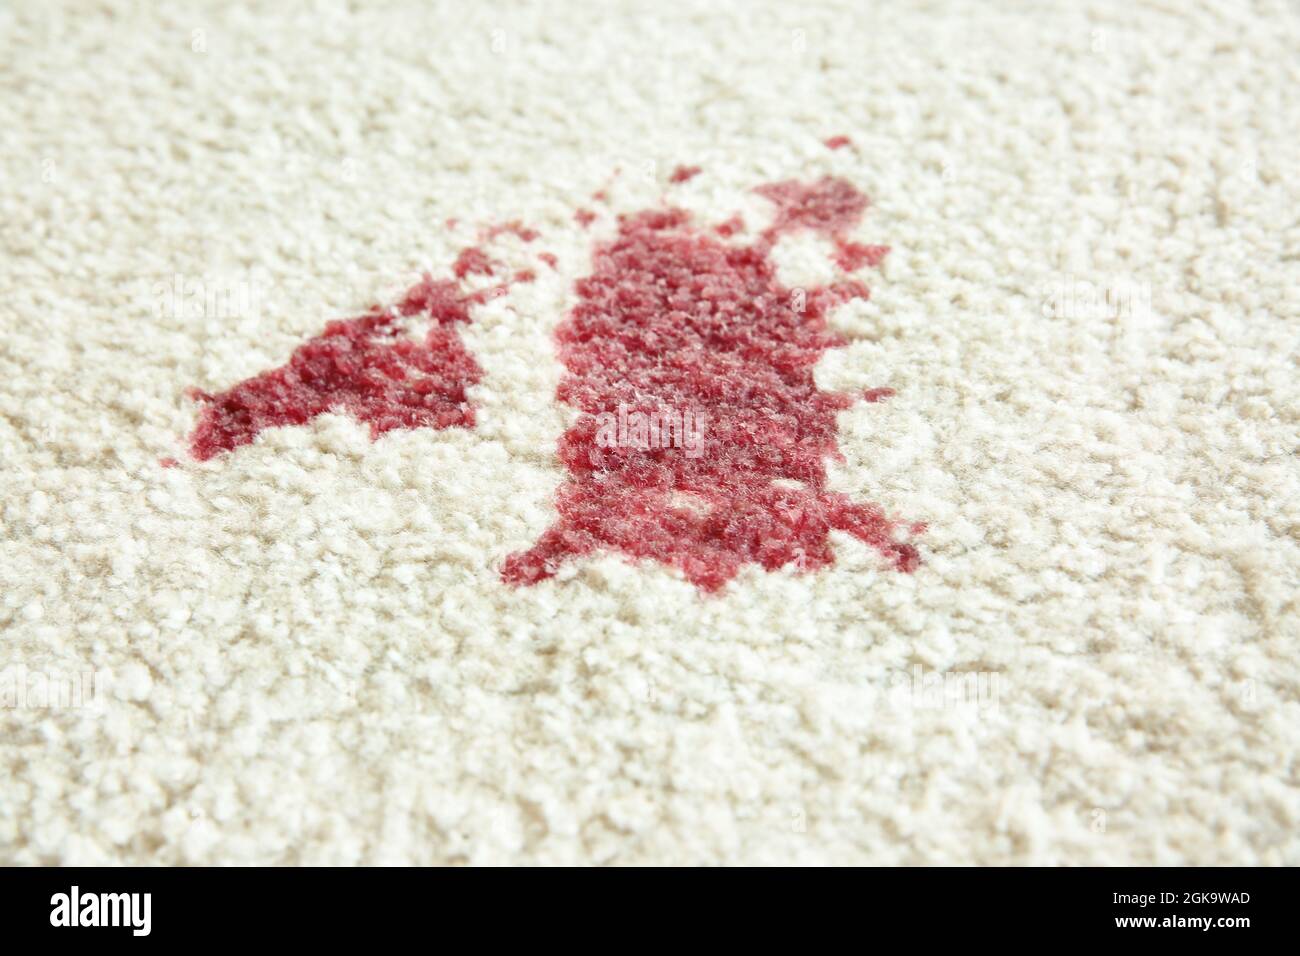 Rotweinfleck auf weißem Teppich, Nahaufnahme Stockfotografie - Alamy